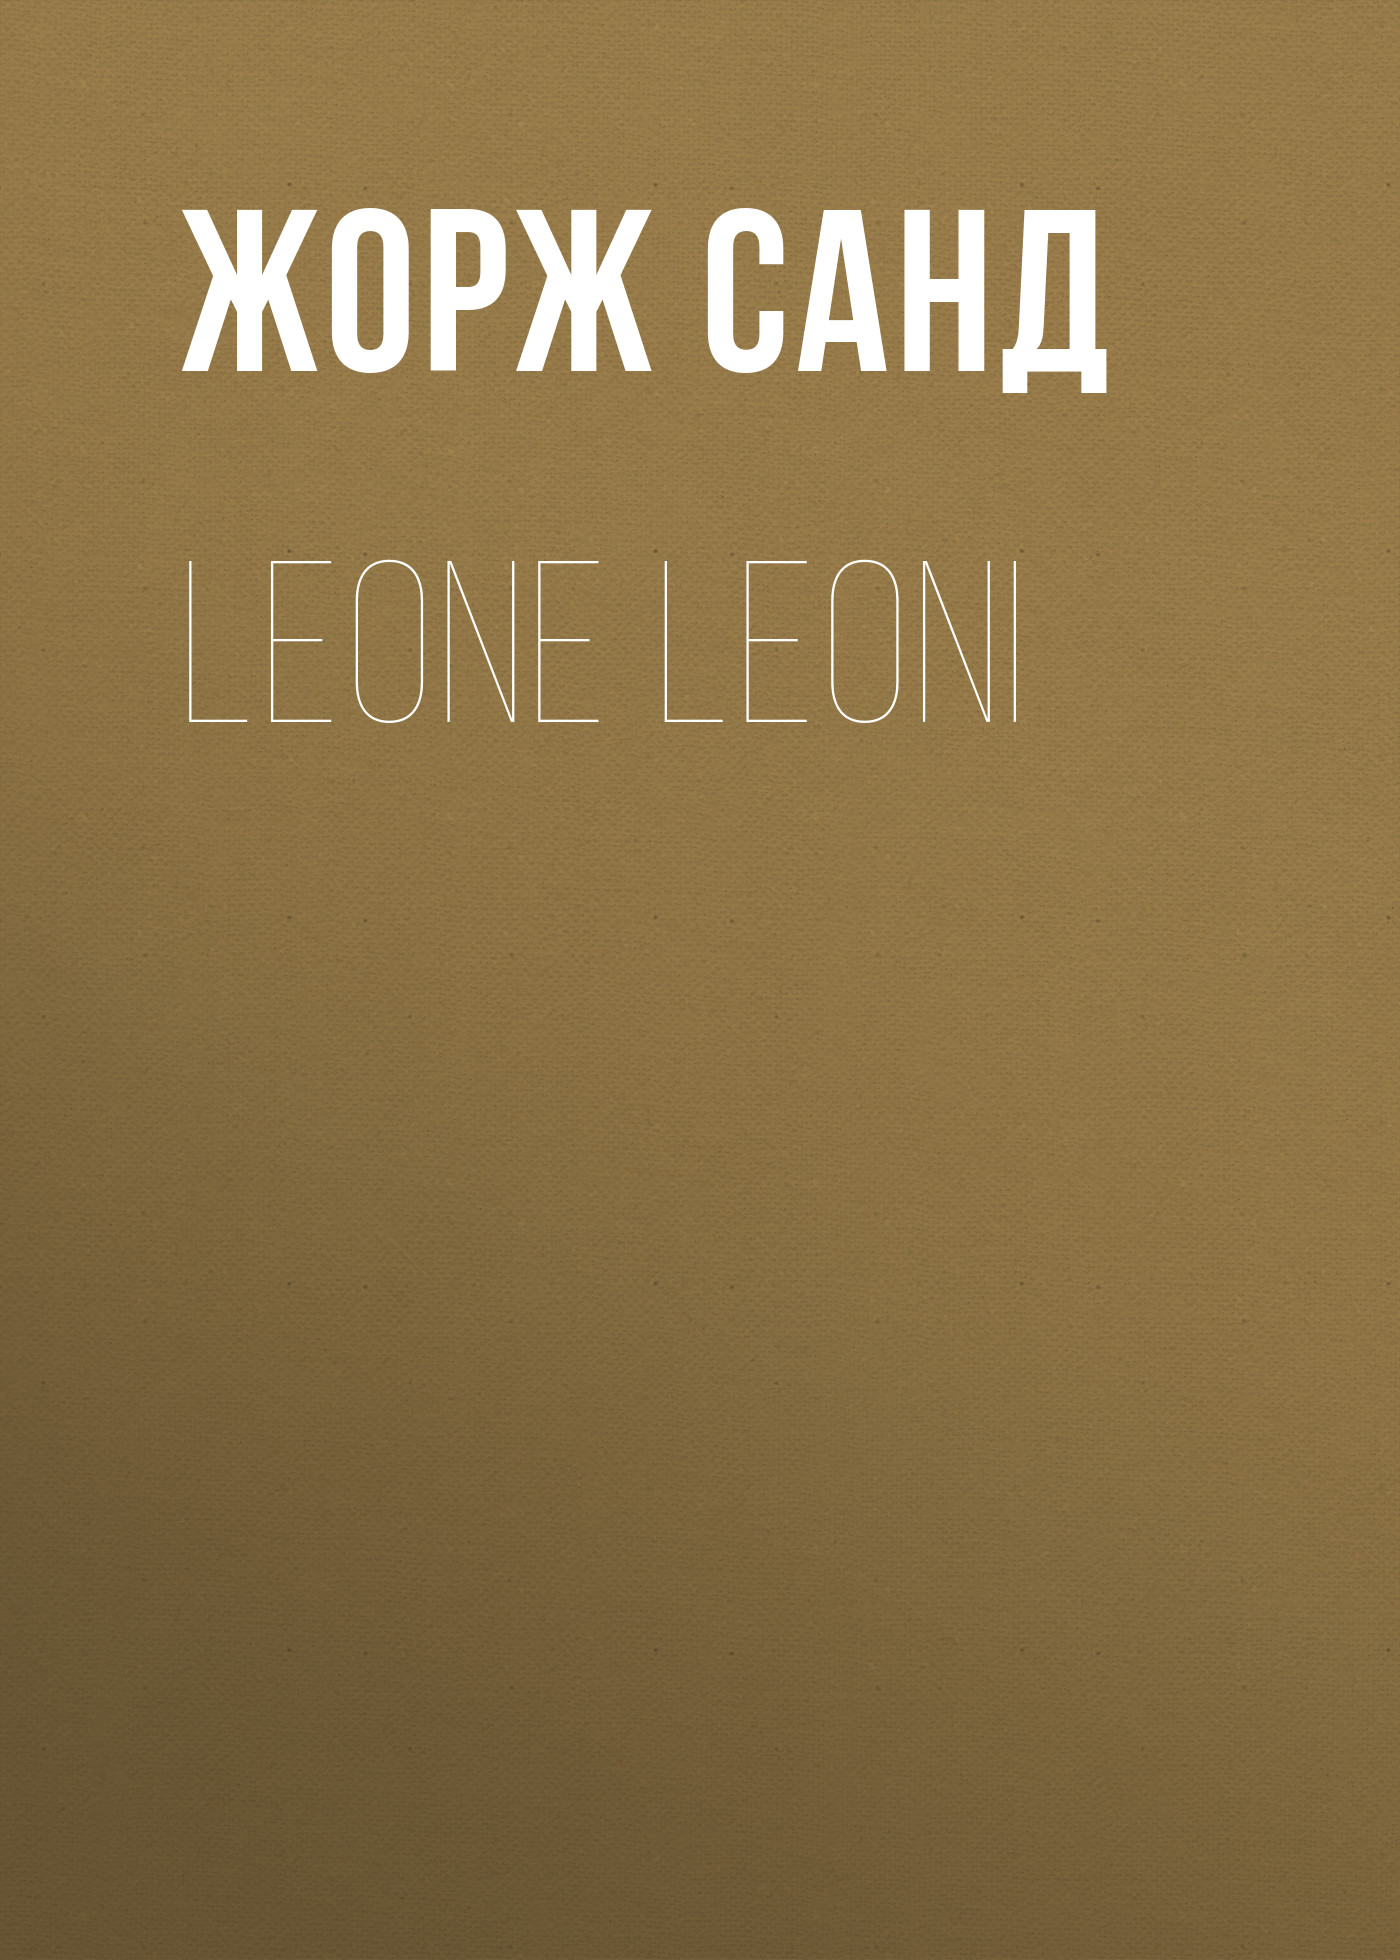 Книга Leone Leoni из серии , созданная Жорж Санд, может относится к жанру Литература 19 века, Зарубежная старинная литература, Зарубежная классика. Стоимость электронной книги Leone Leoni с идентификатором 25450852 составляет 0 руб.